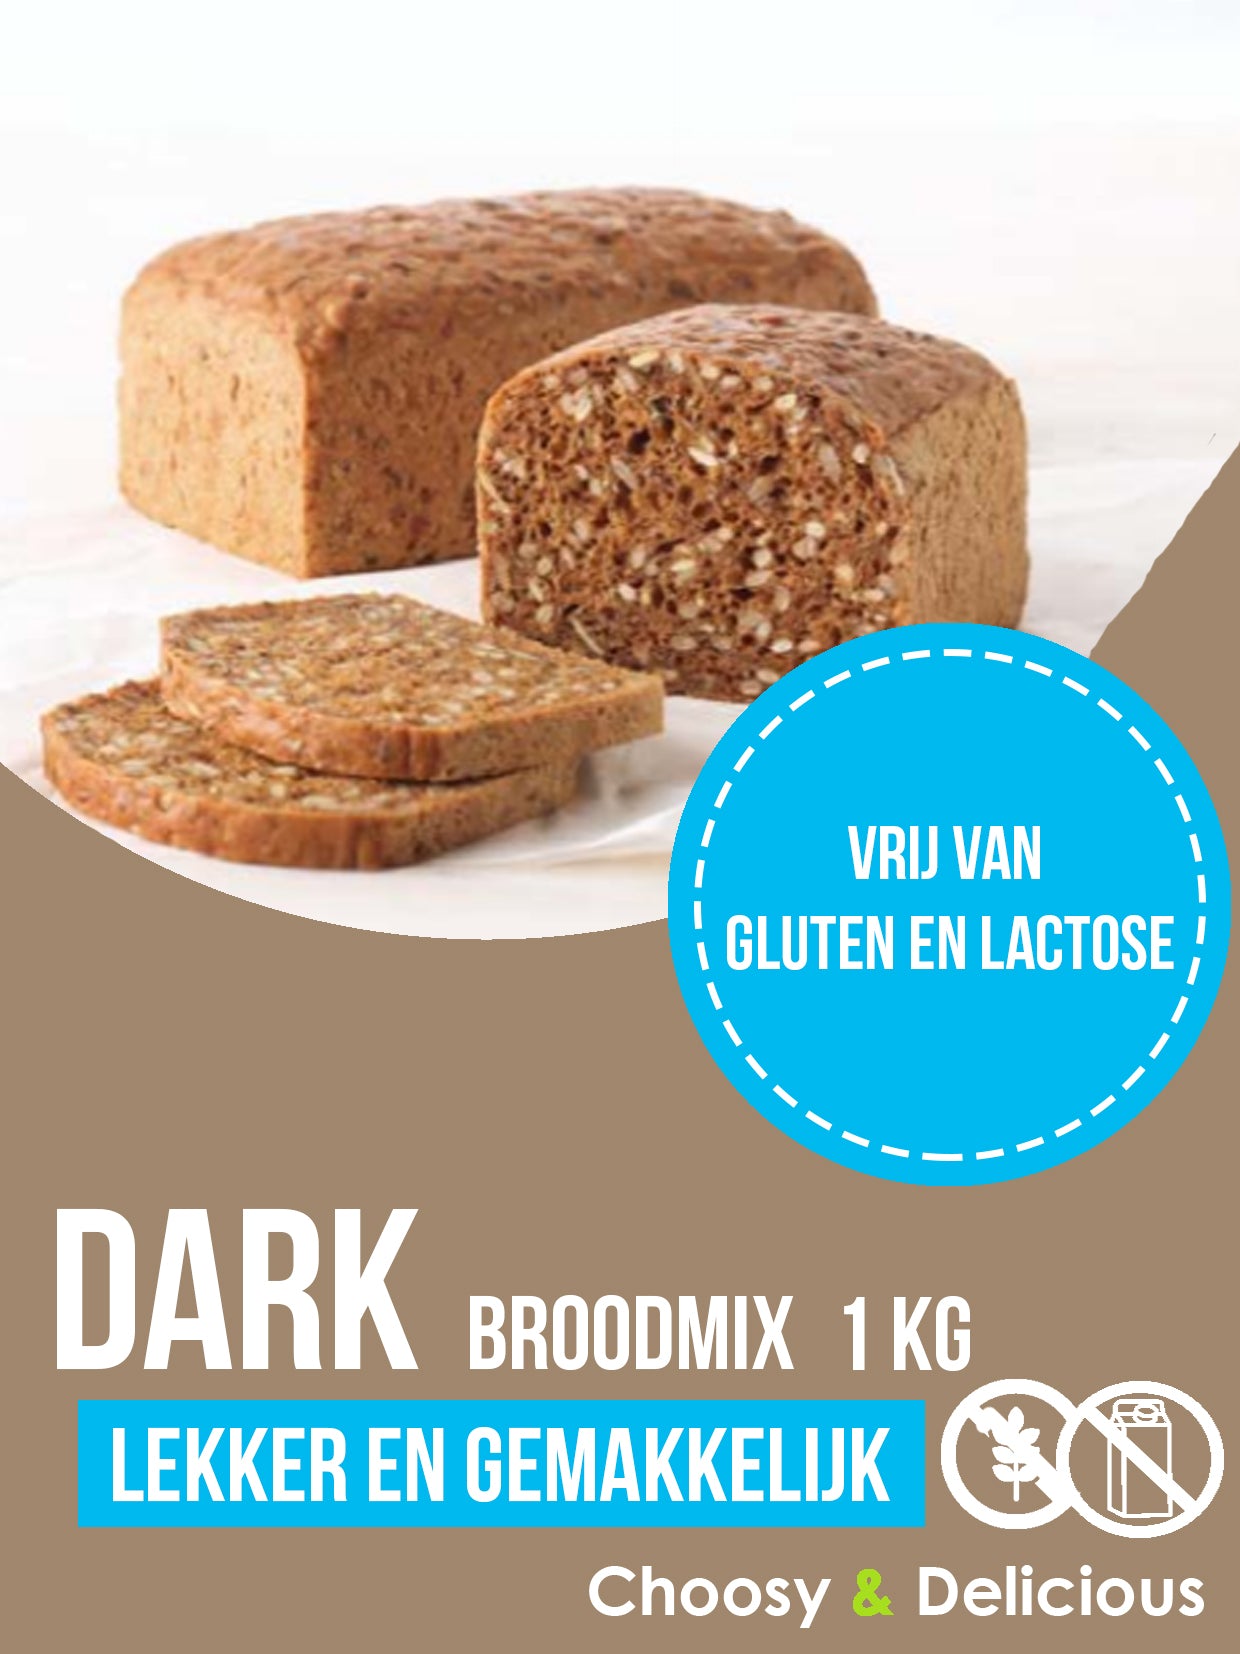 Dark broodmix - Gluten en Lactosevrij